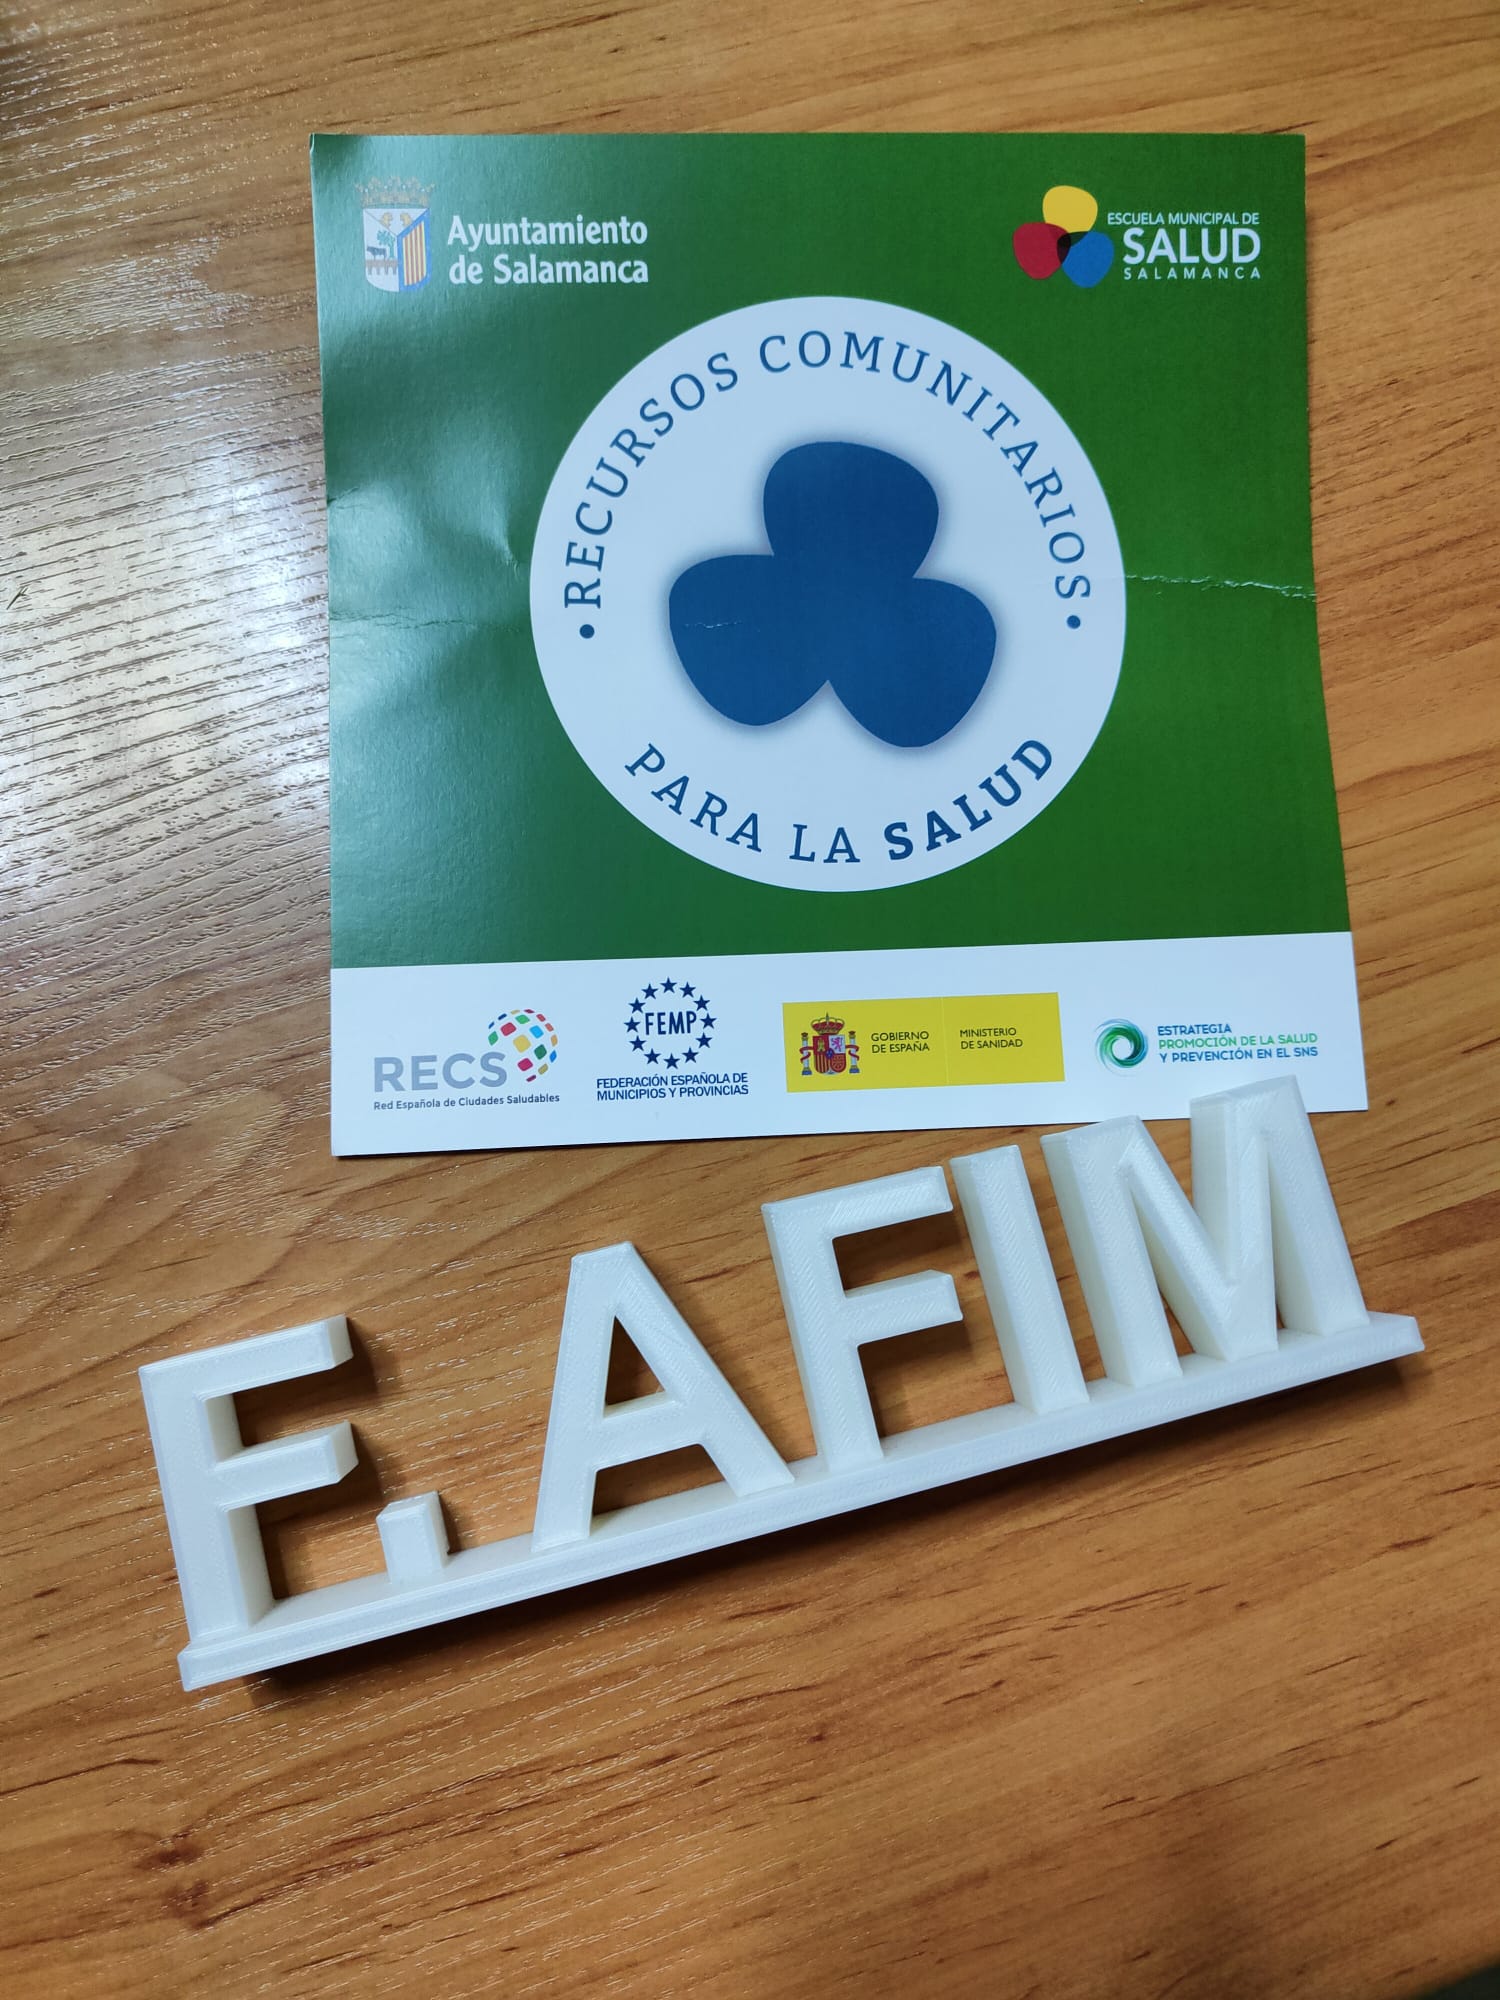 Fundación AFIM, reconocida como Recurso Comunitario de Salud por el Ayuntamiento de Salamanca